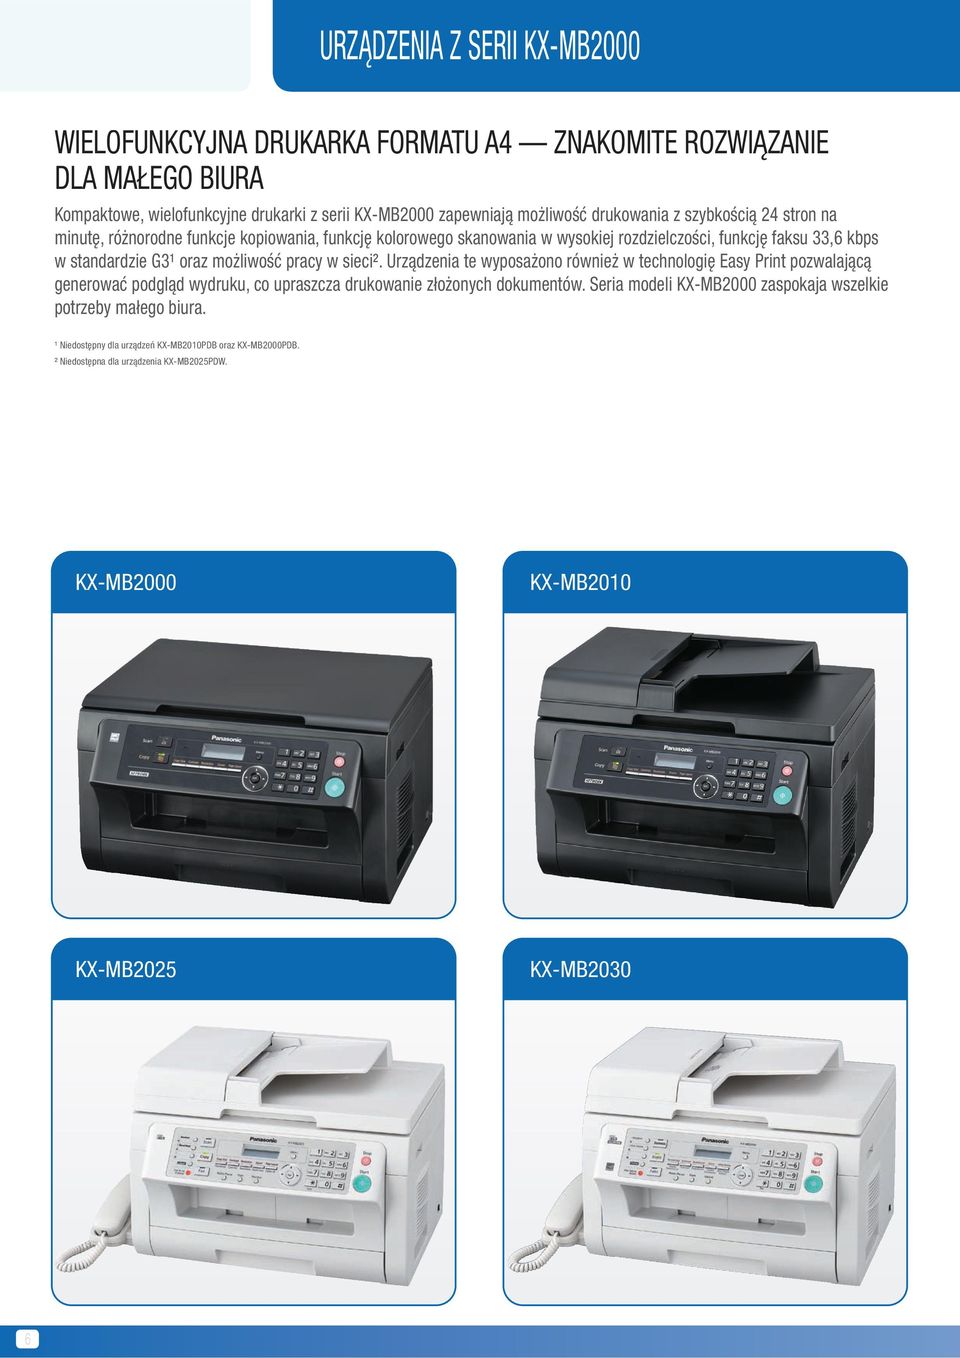 możliwość pracy w sieci². Urządzenia te wyposażono również w technologię Easy Print pozwalającą generować podgląd wydruku, co upraszcza drukowanie złożonych dokumentów.